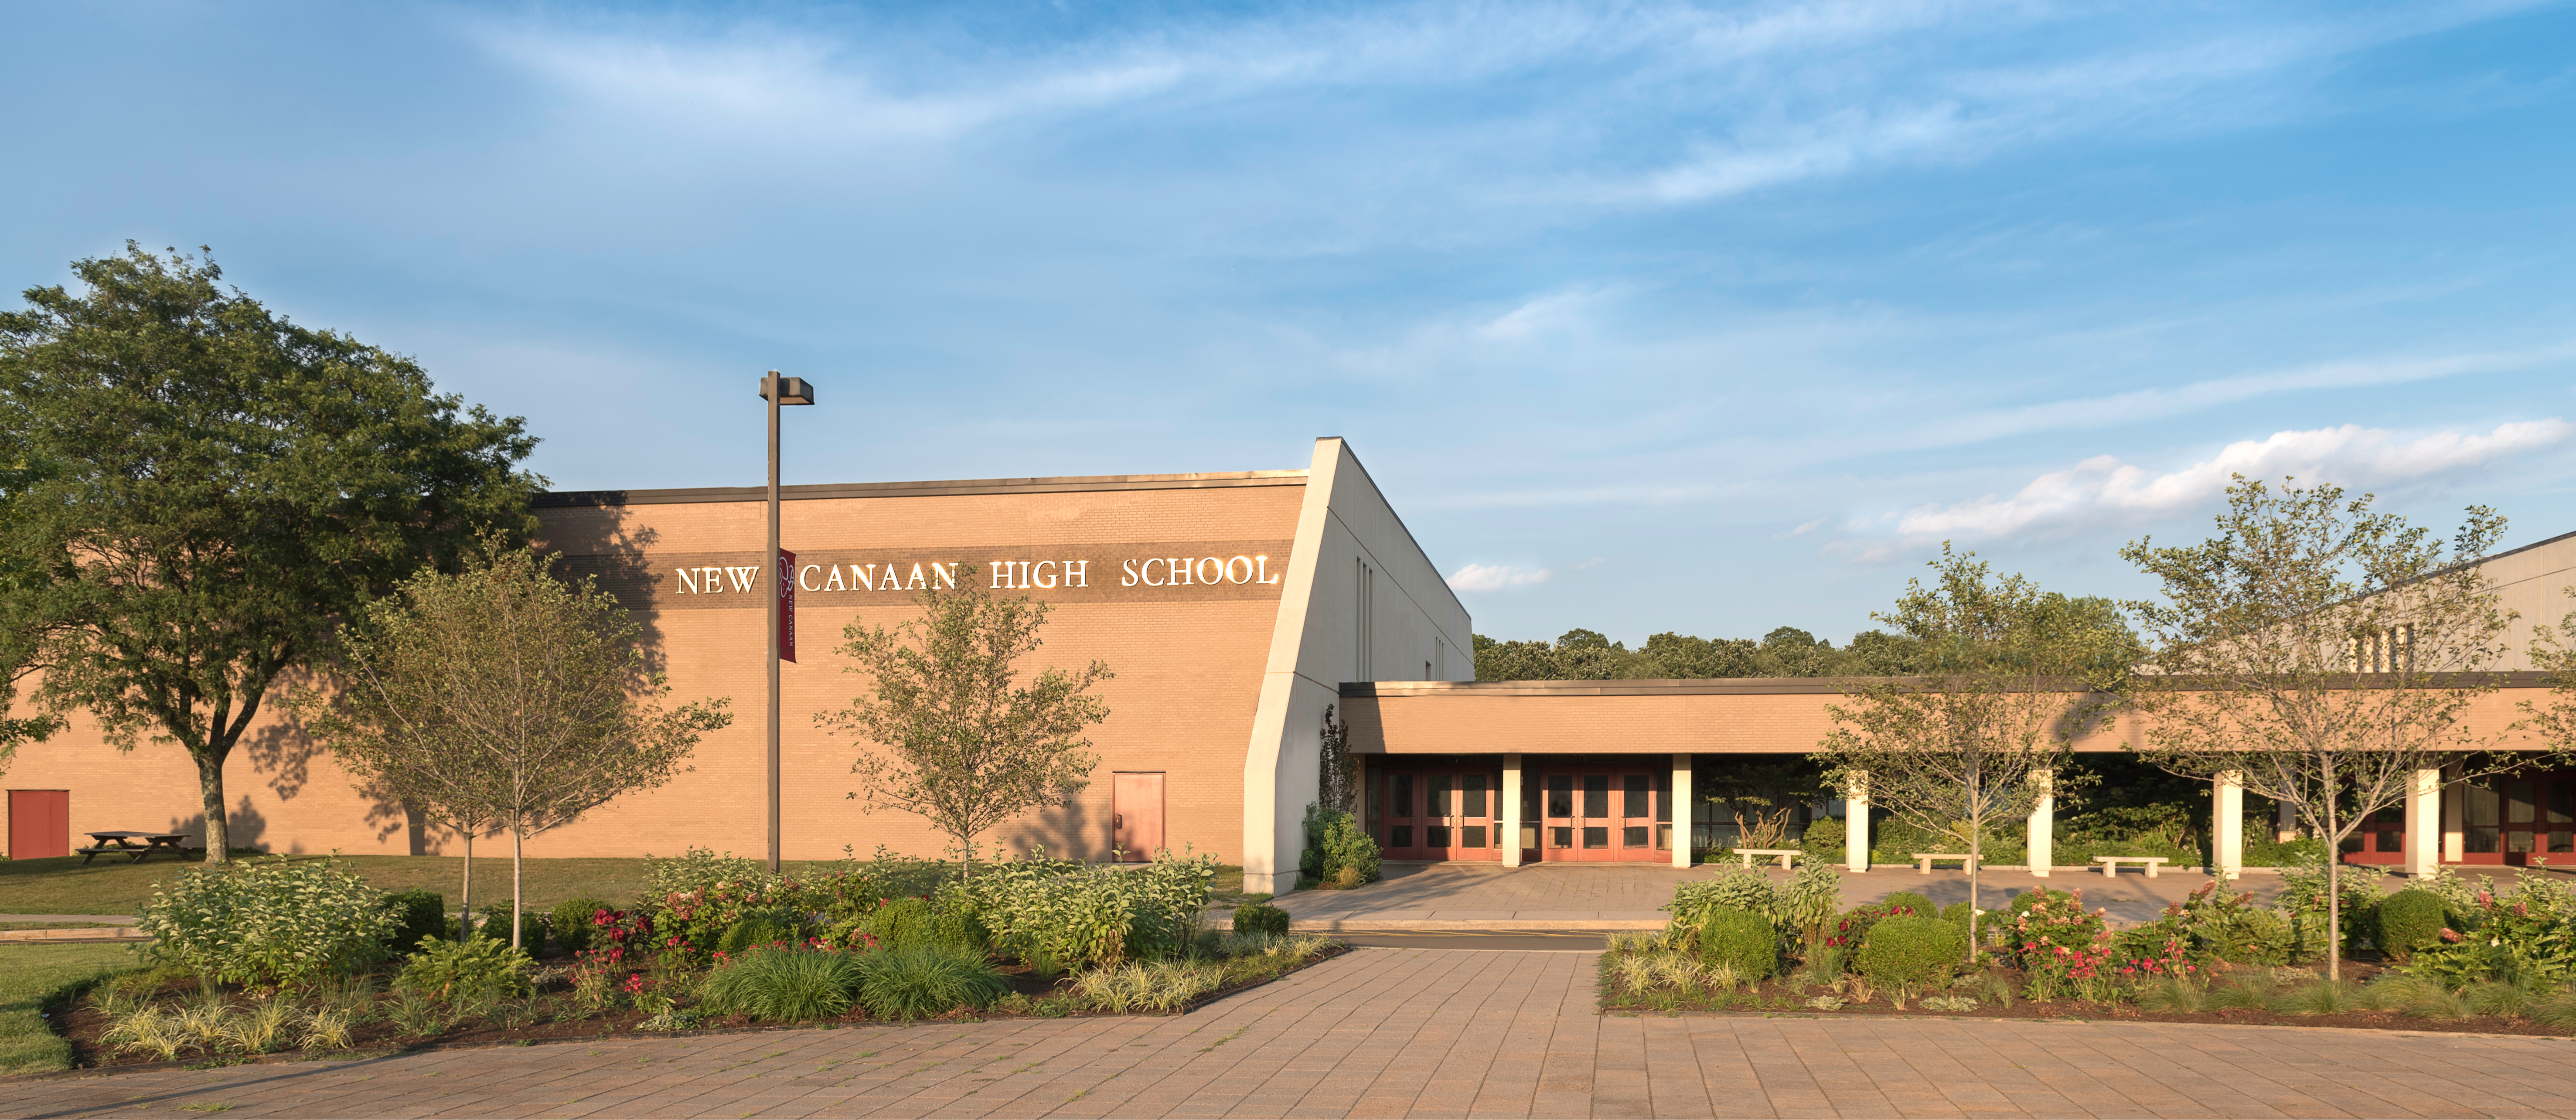 New Canaan High School